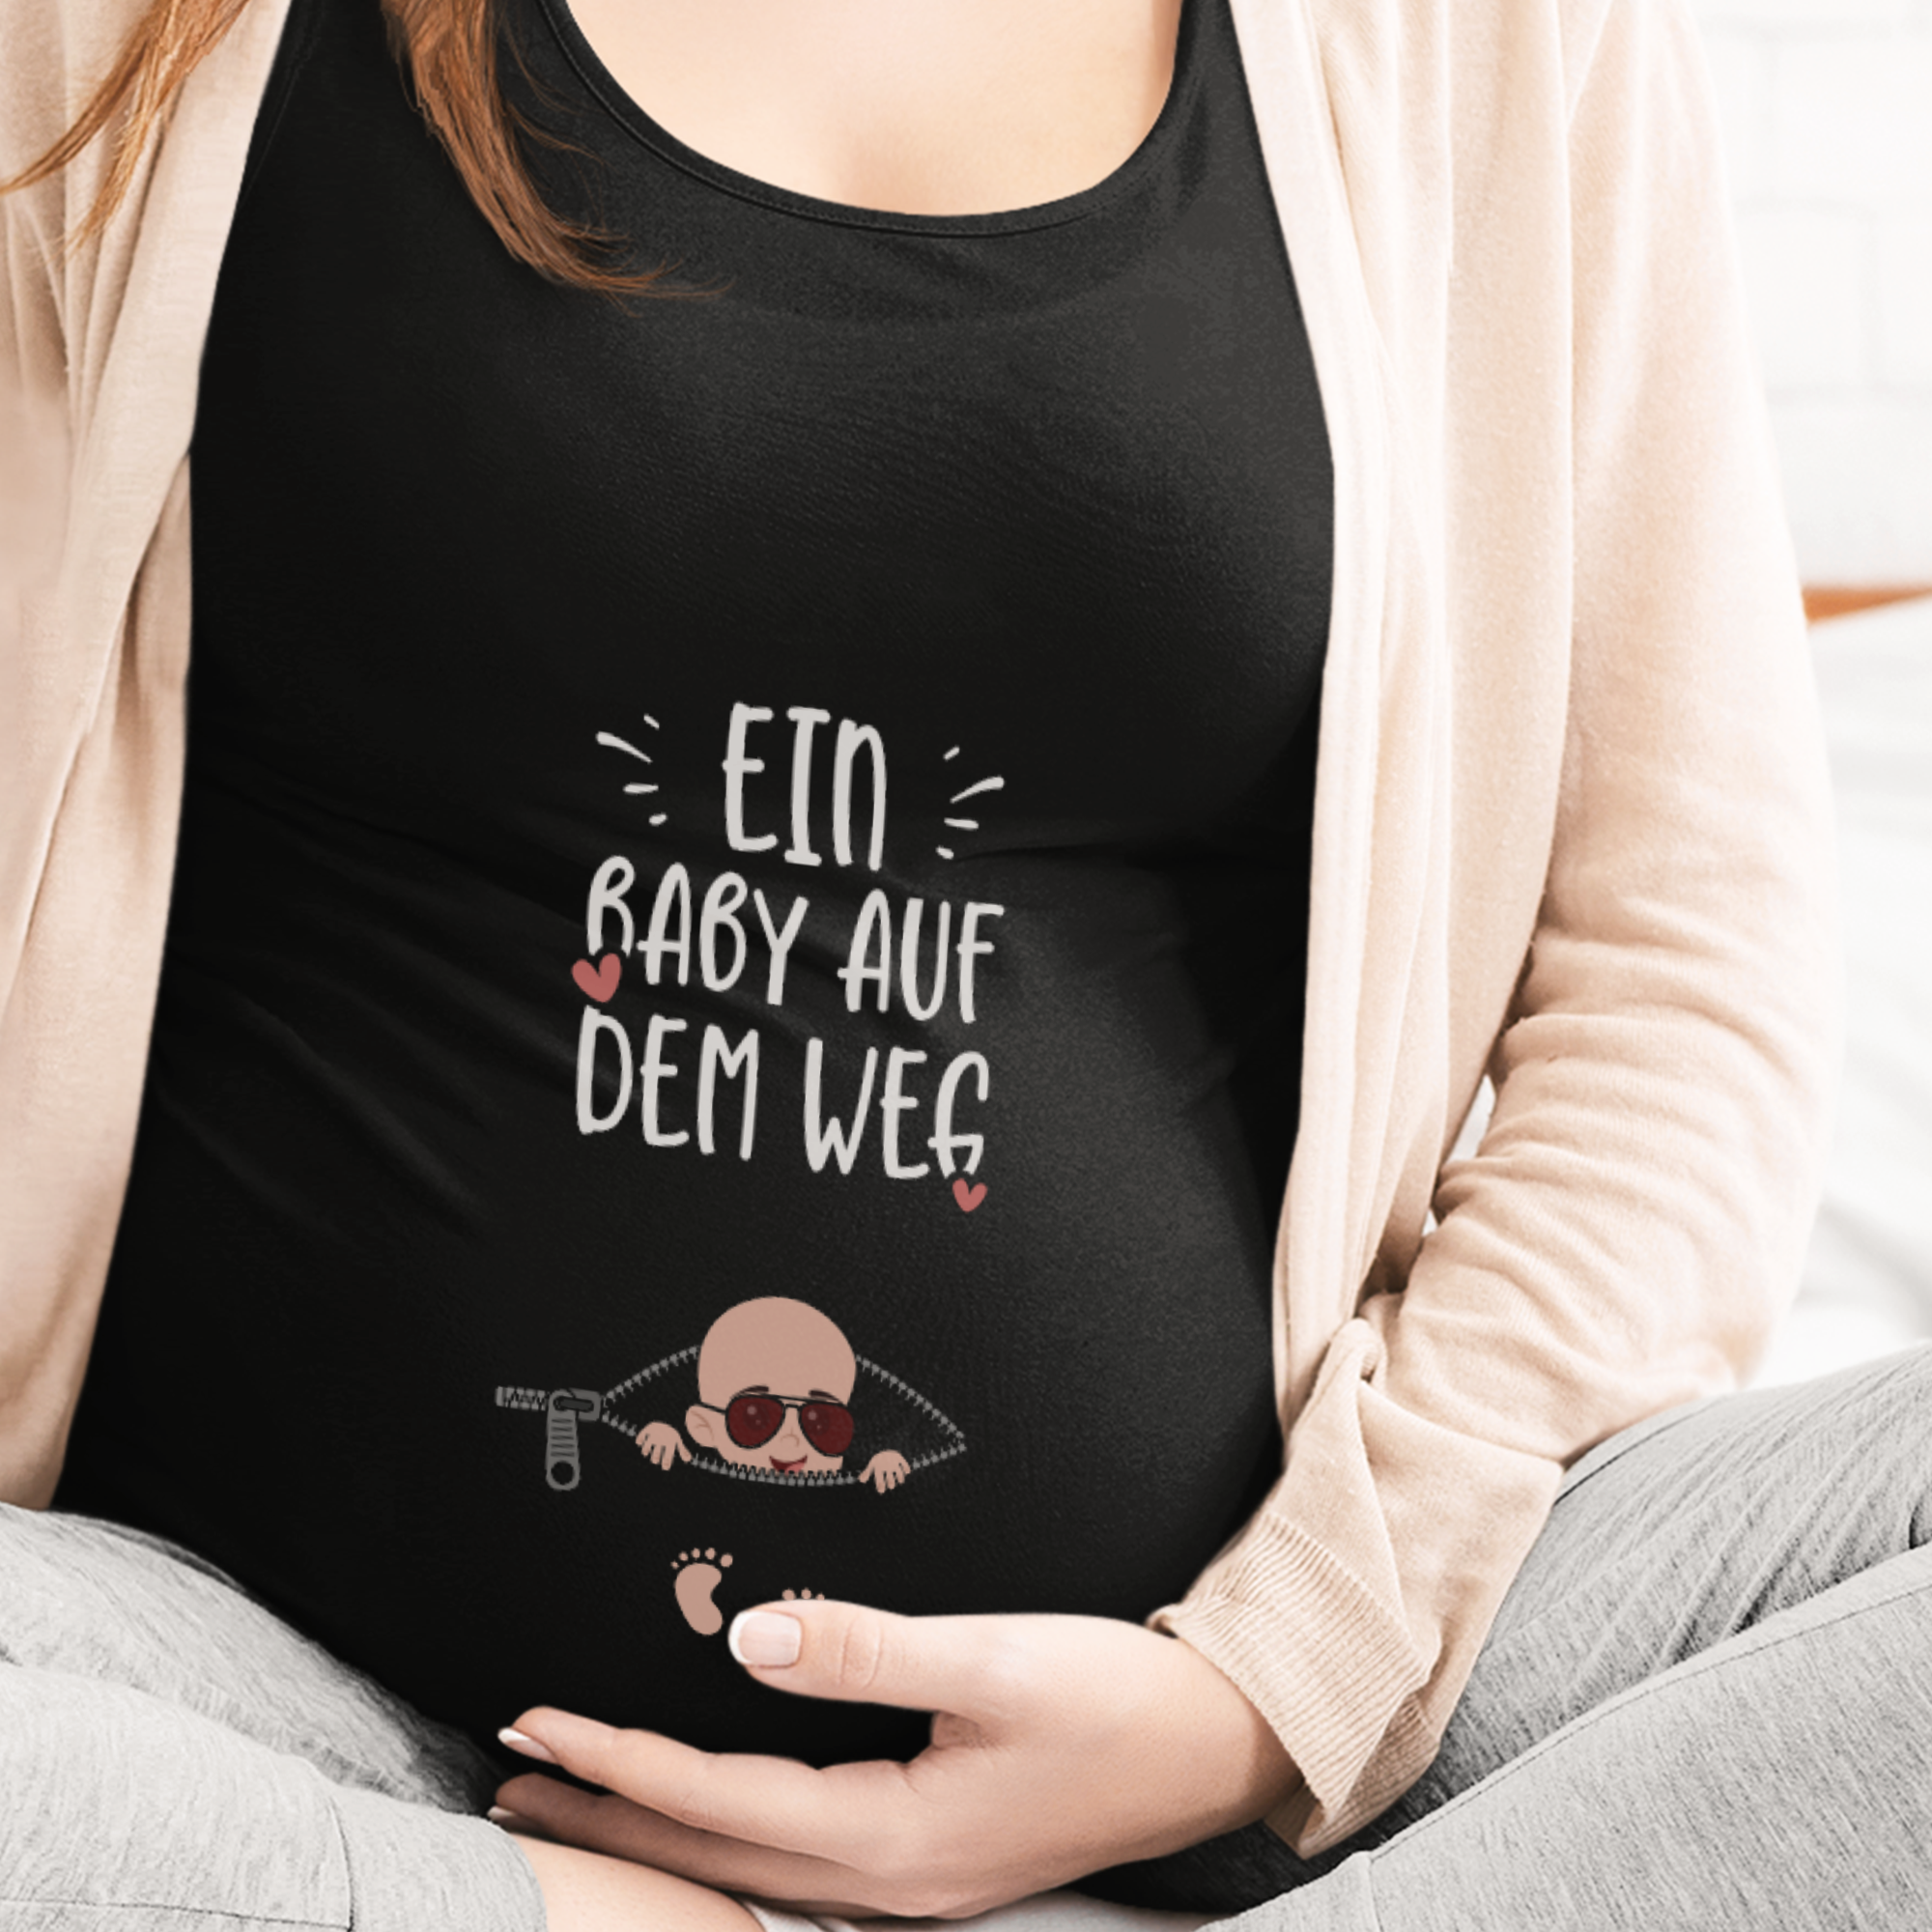 Ein Baby auf dem Weg Schwangerschafts T-Shirt - DESIGNSBYJNK5.COM